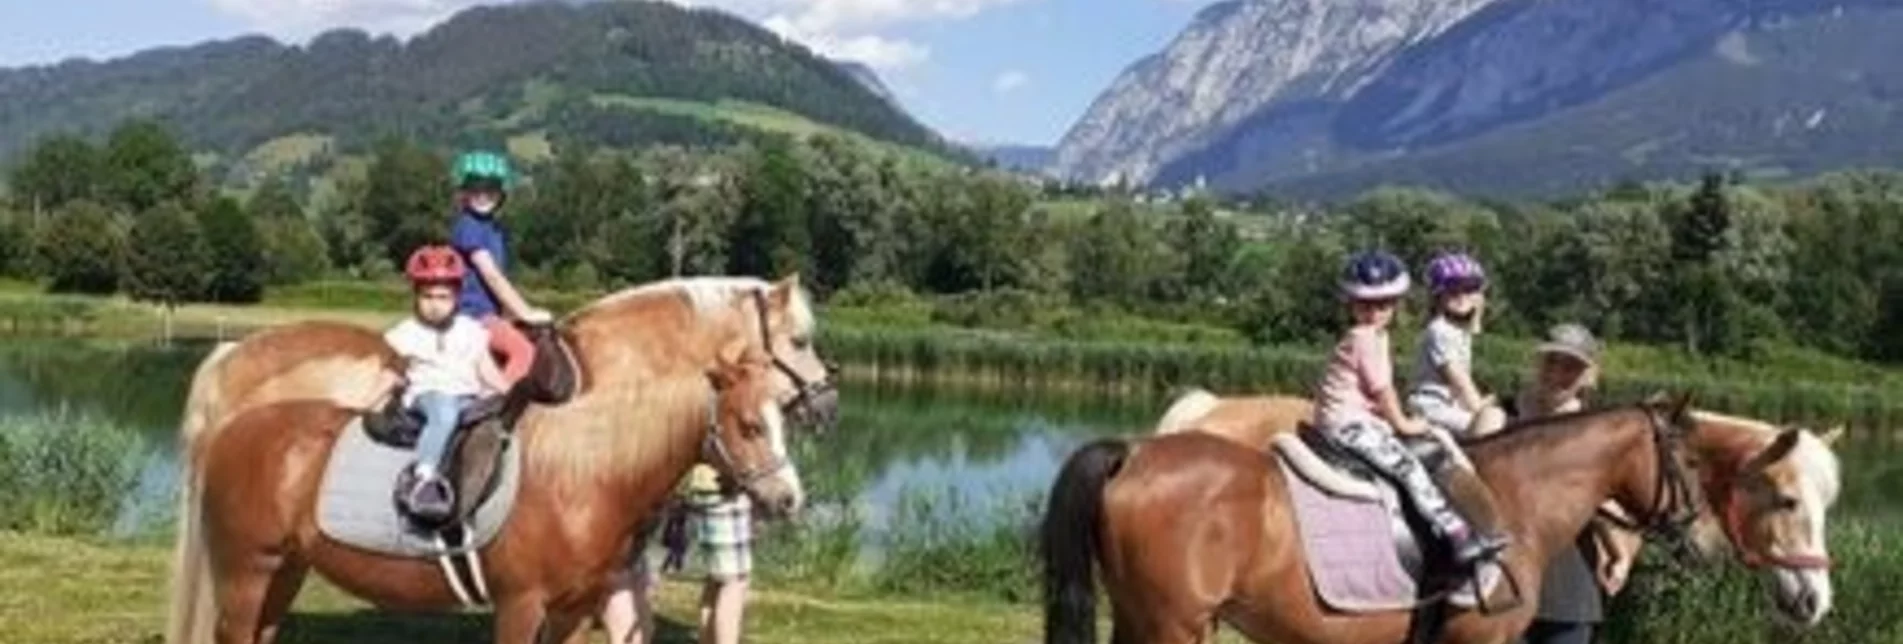 Reiten Geführte Ponywanderungen, Fam. Sulzbacher - Touren-Impression #1